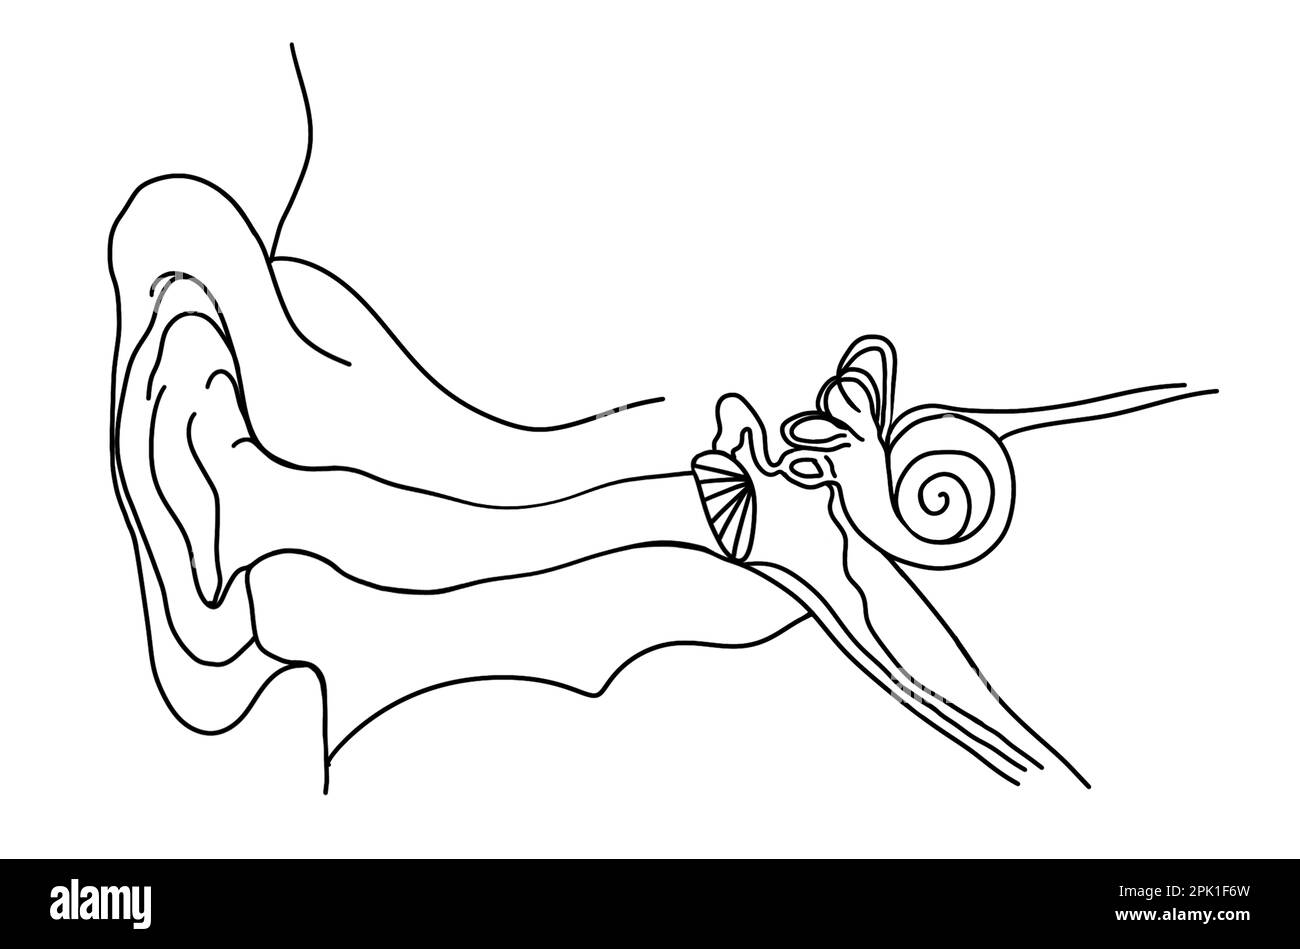 Anatomie de l'oreille humaine sur fond blanc. Illustration Banque D'Images